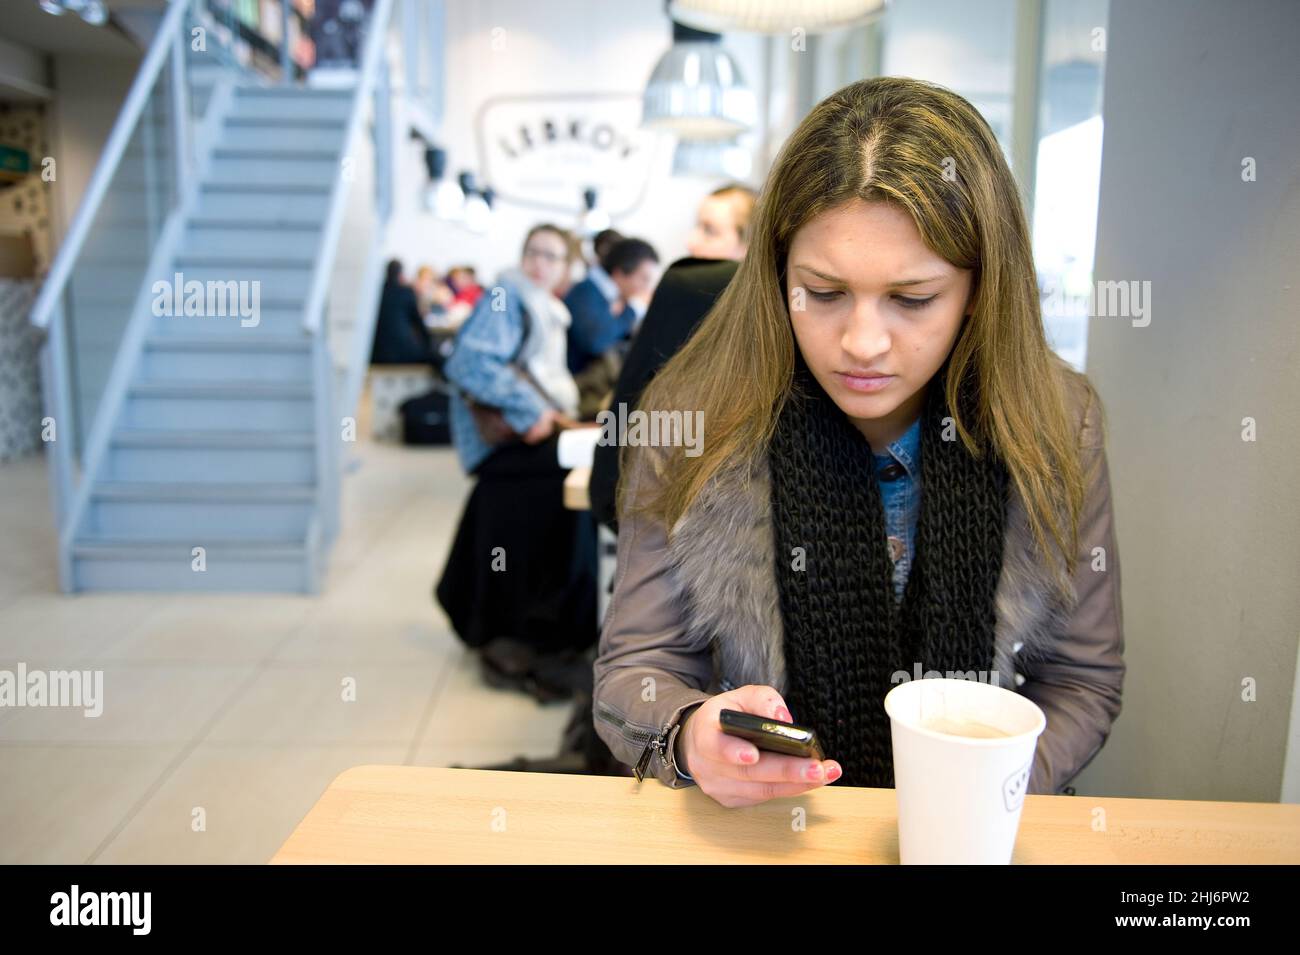 Rotterdam, Niederlande. Junge Erwachsene Frau, die ihre Smartphone-Nachrichten abcheckt, während sie einen Kaffee im Lebkov Coffee Place trinken. Stockfoto